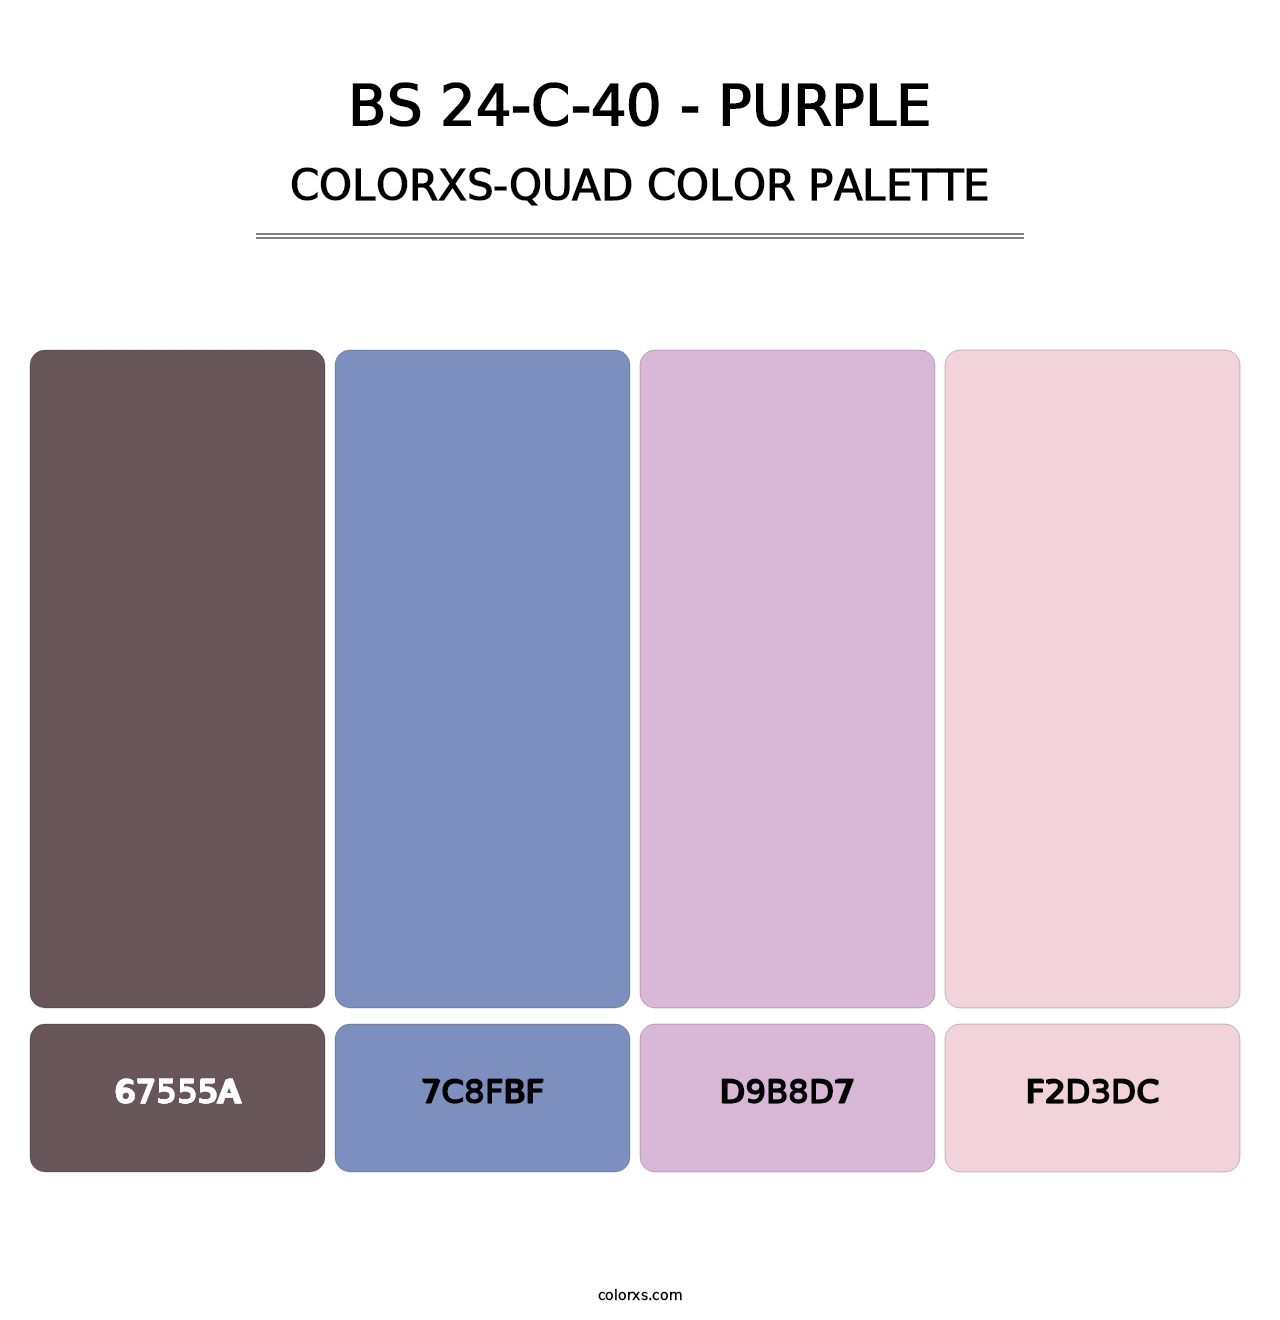 BS 24-C-40 - Purple - Colorxs Quad Palette